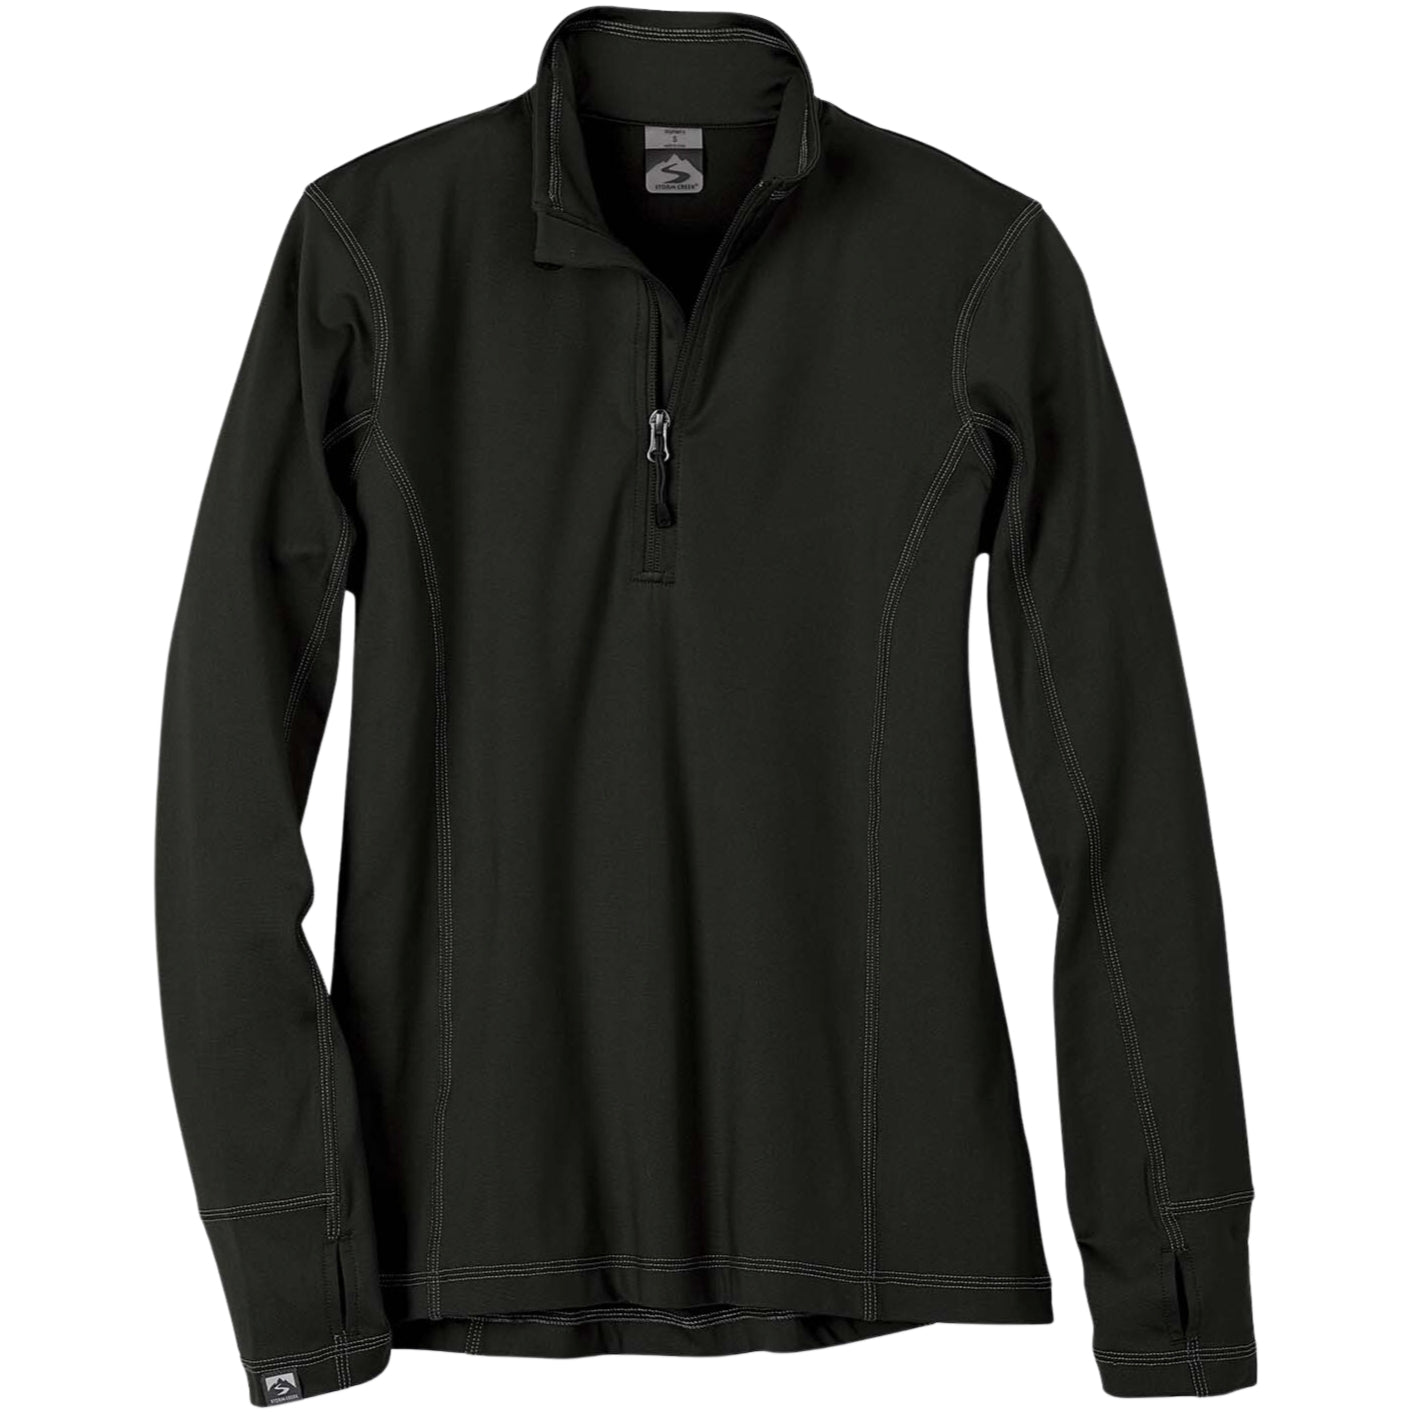 Customizable Storm Creek women's Adapter quarter zip jacket in black.